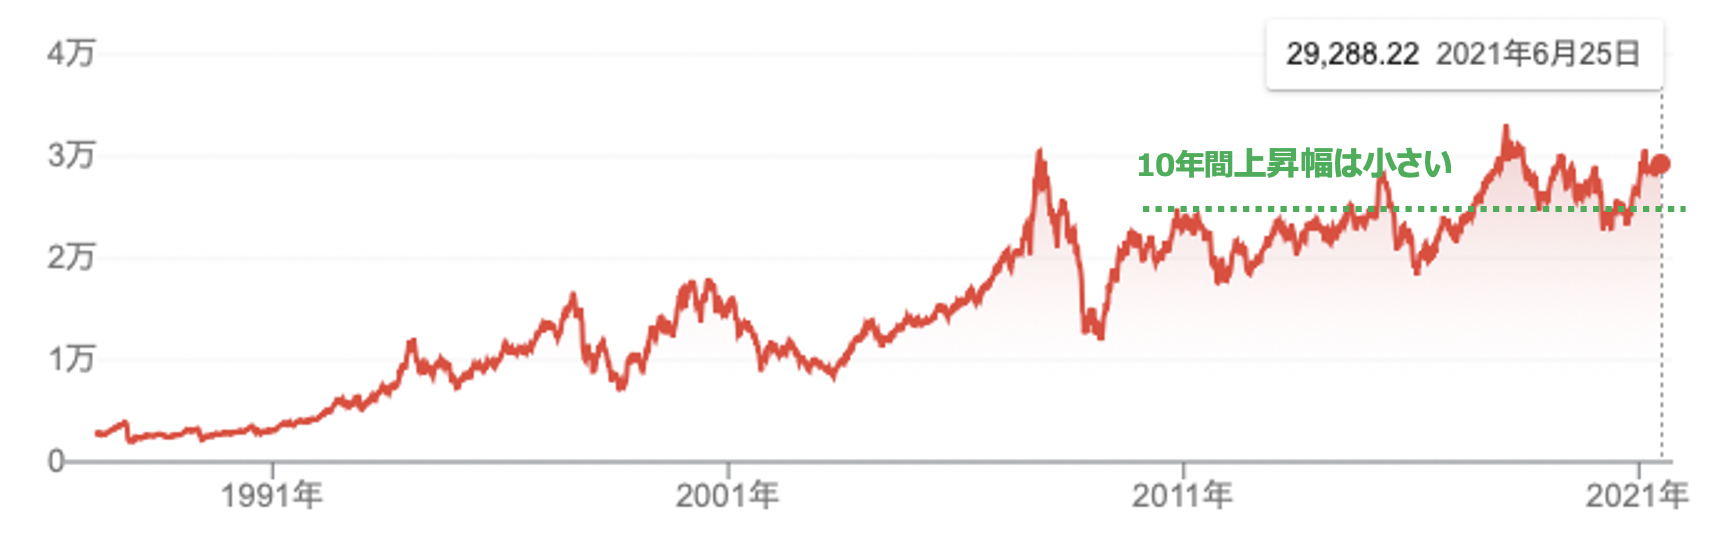 香港ハンセン指数の株価推移